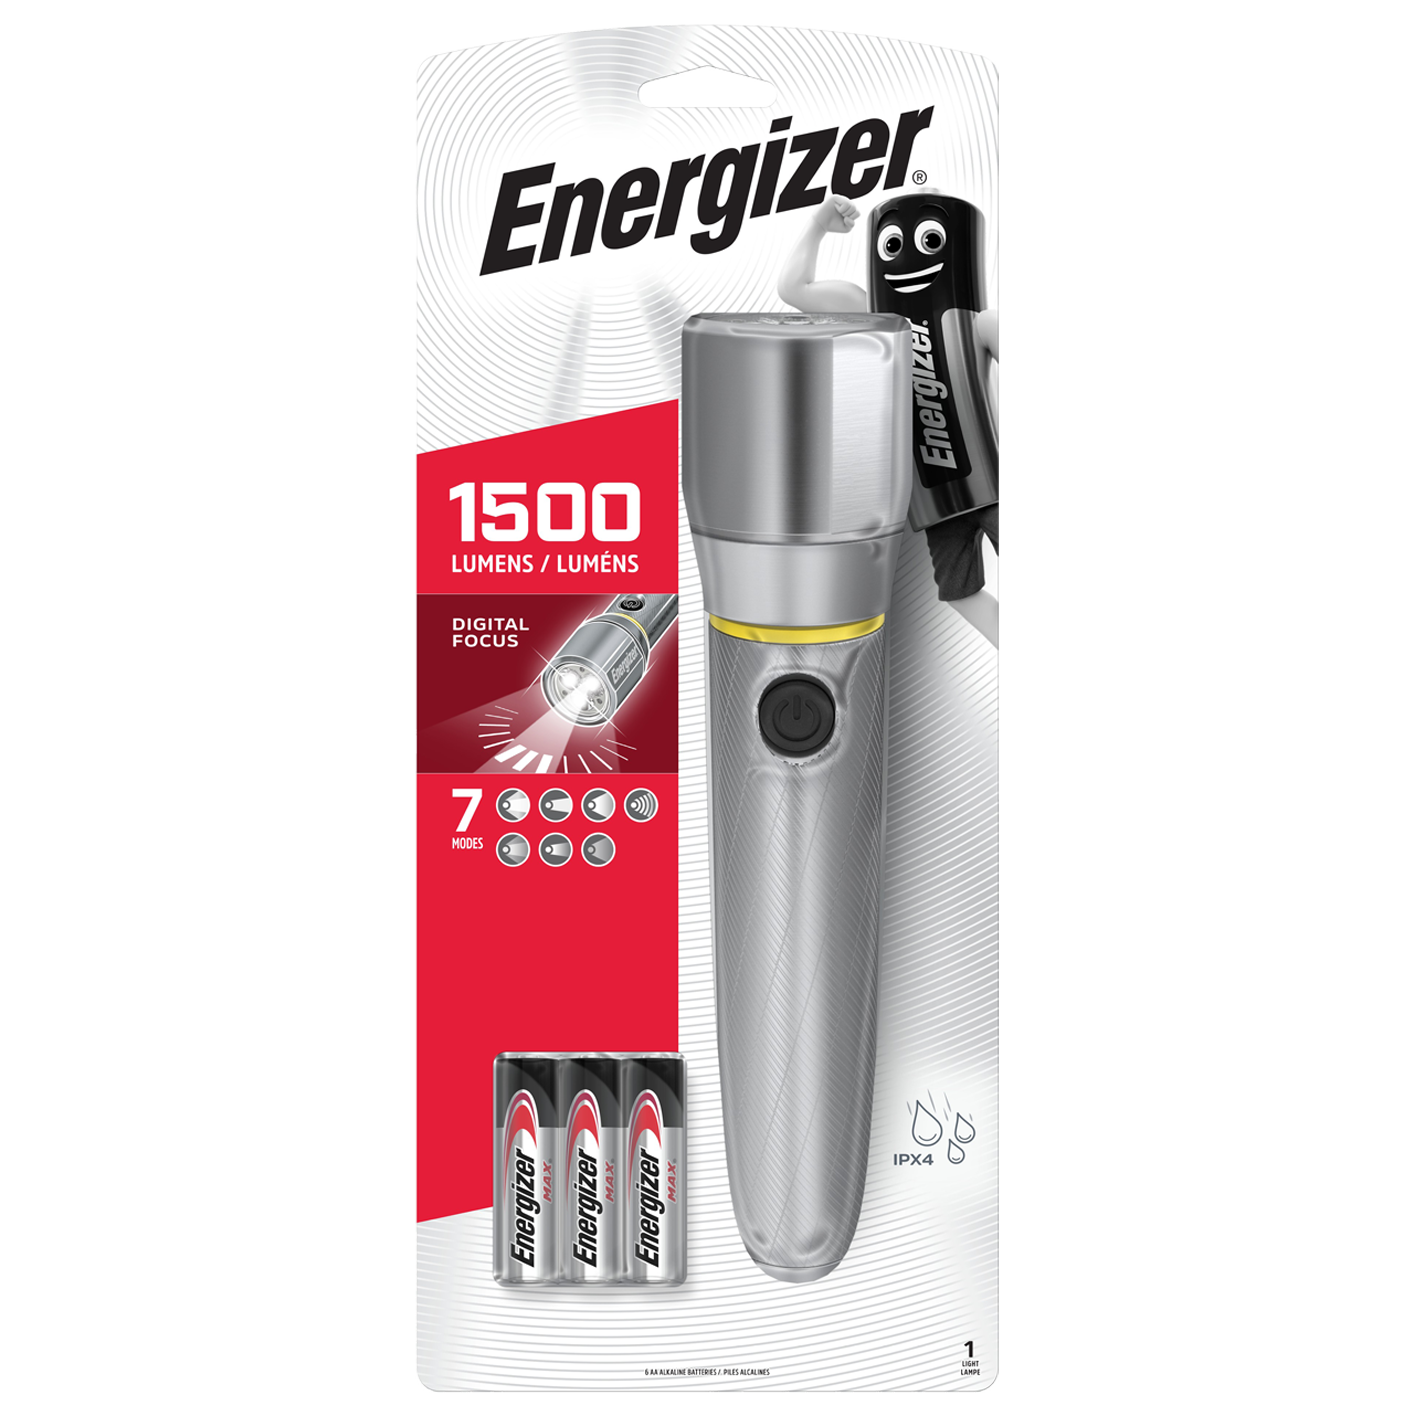 Energizer LED Vision HD Metall-Taschenlampe mit 1500 Lumen und 6 x AA-Batterien